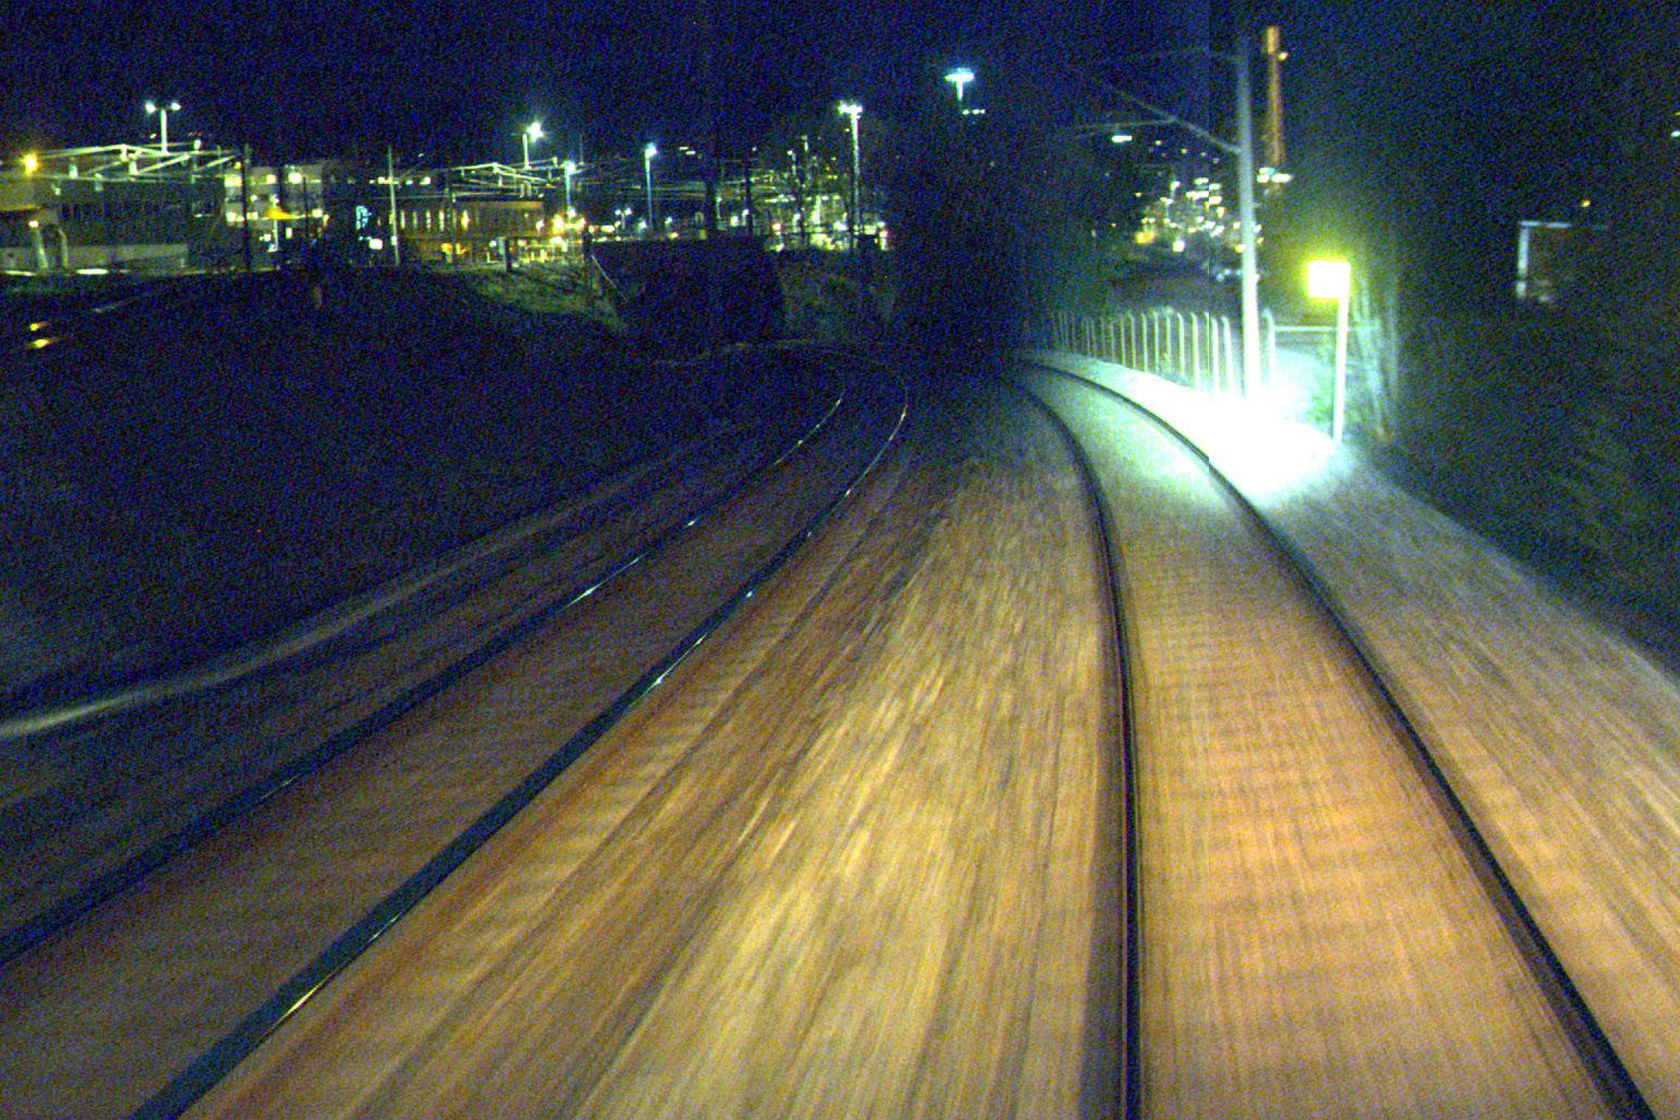 Spor på Brobekk stasjon